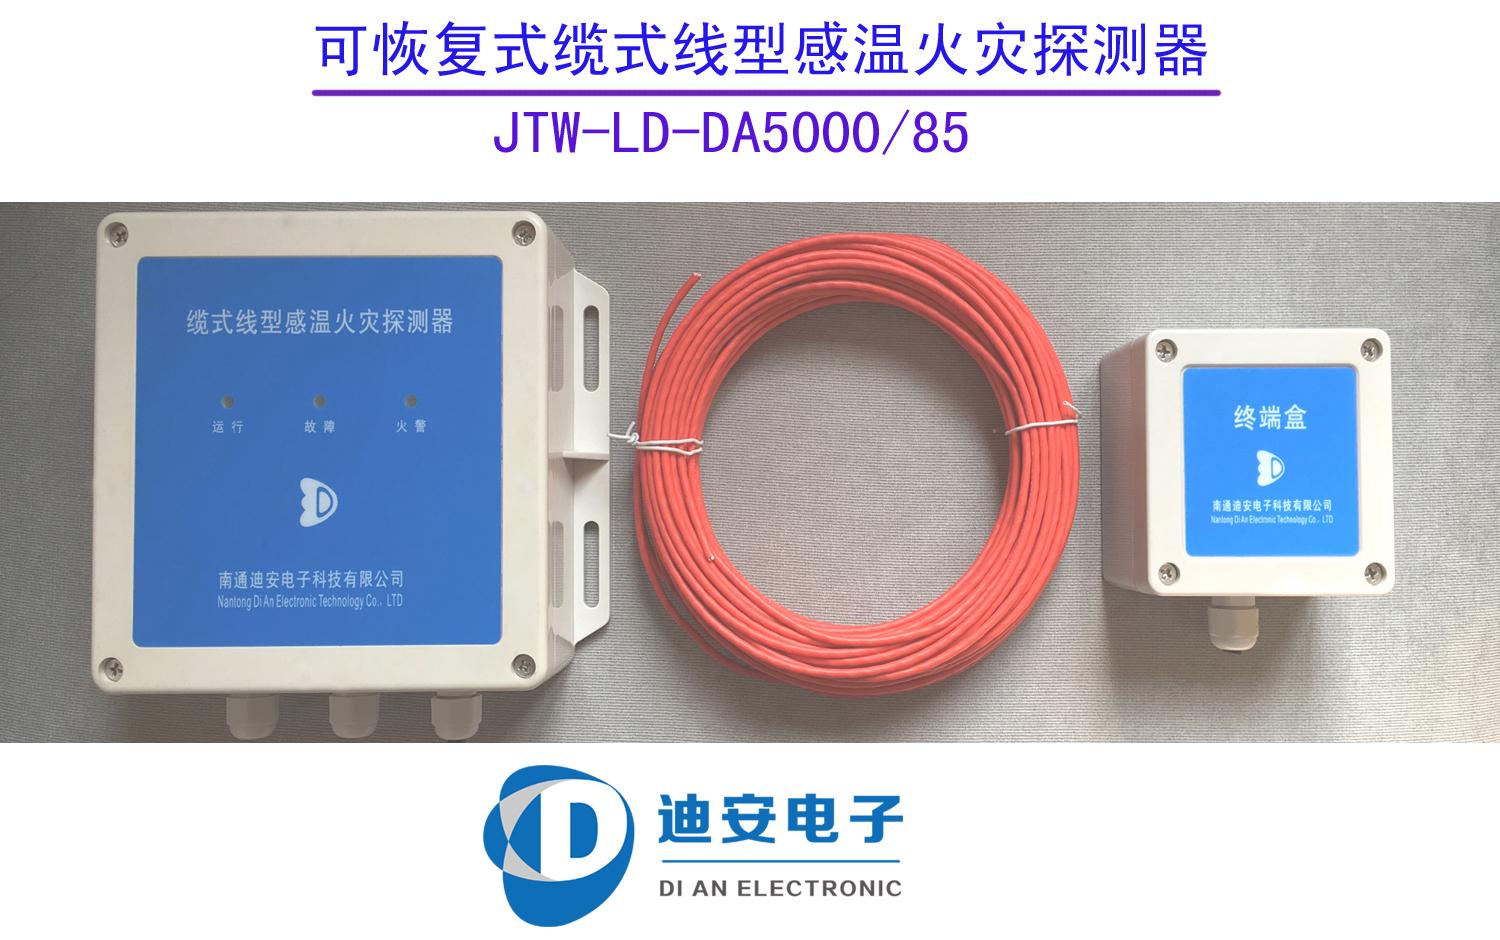 JTW-LD-DA5000专业生产销售85度感温电缆